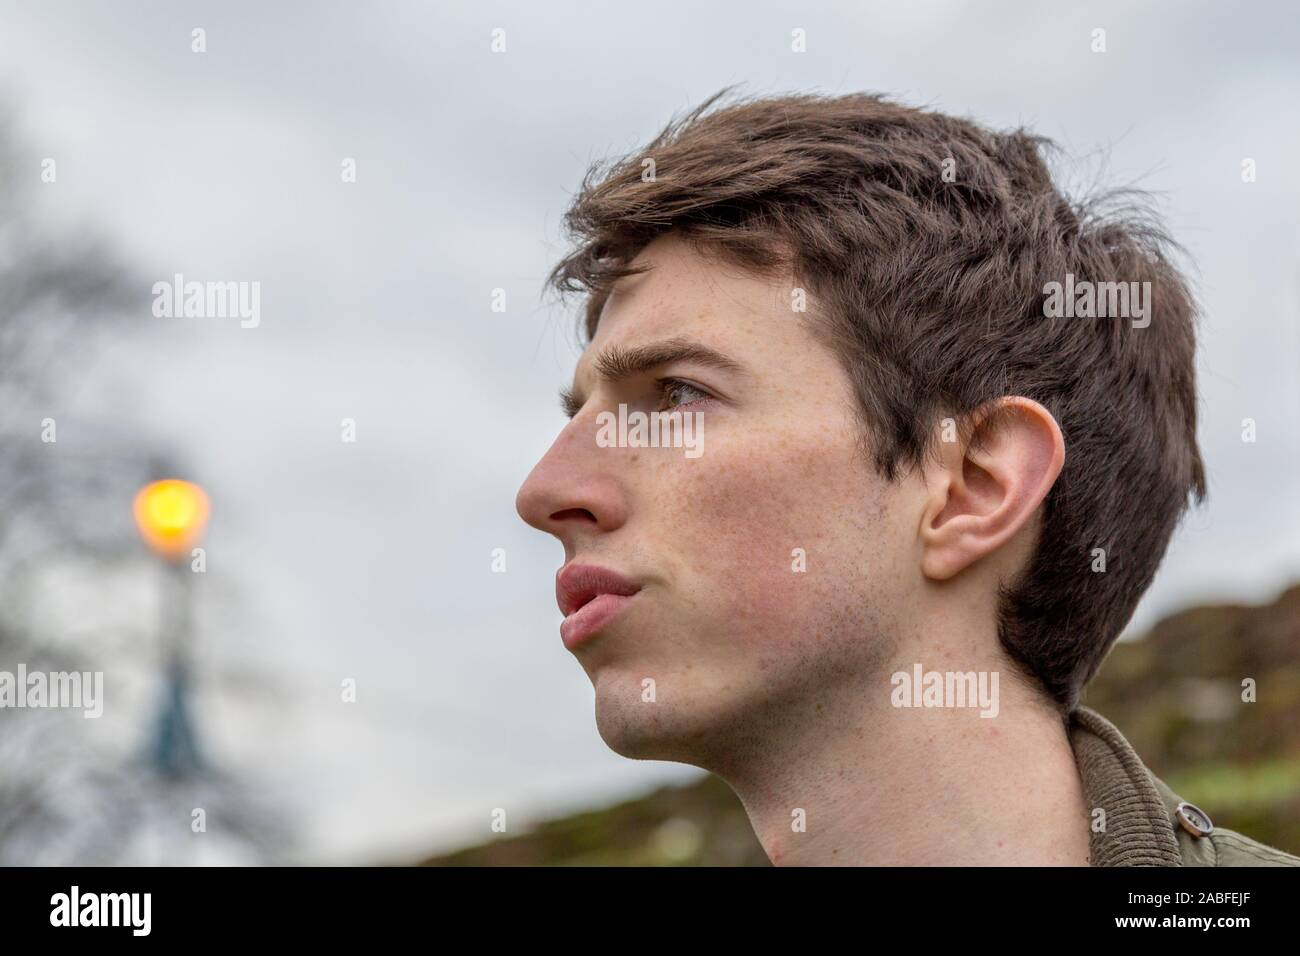 Ein junger Mann in seinen späten Teens oder Anfang der 20er Jahre steht im Freien mit einem ernsten Ausdruck, als er in die Ferne schaut. Stockfoto